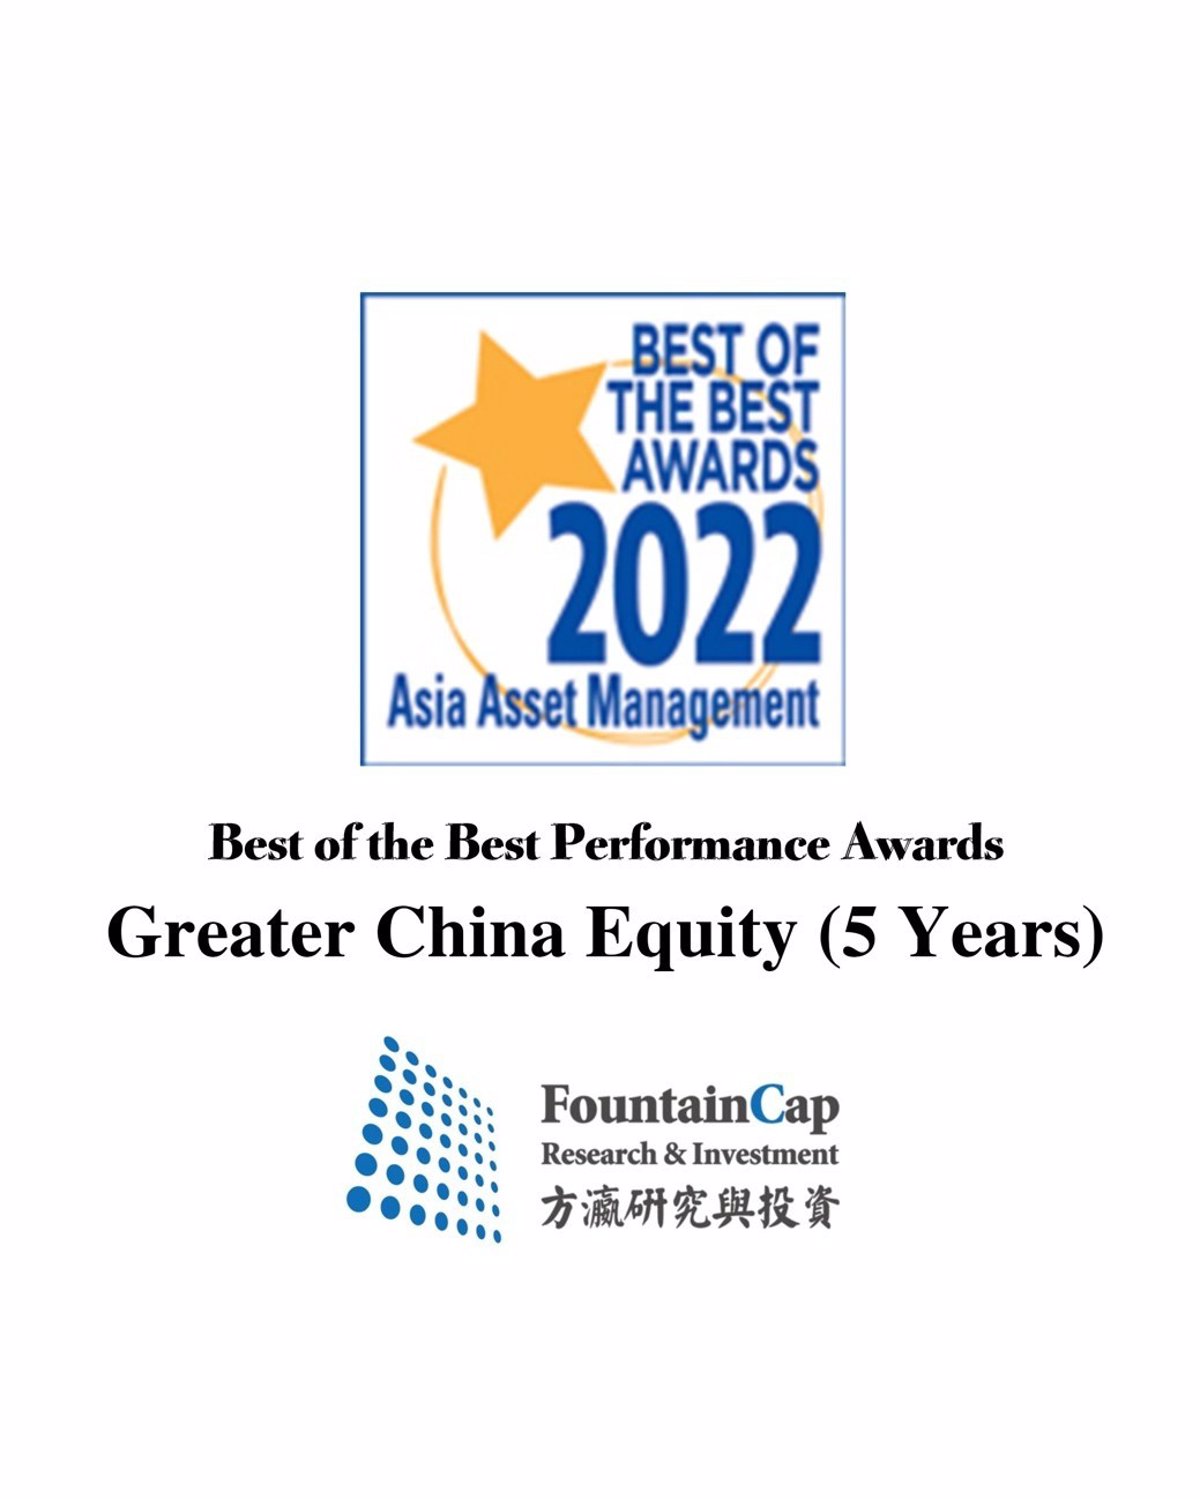 FountainCap consigue el premio Asia Asset Management Best of the Best